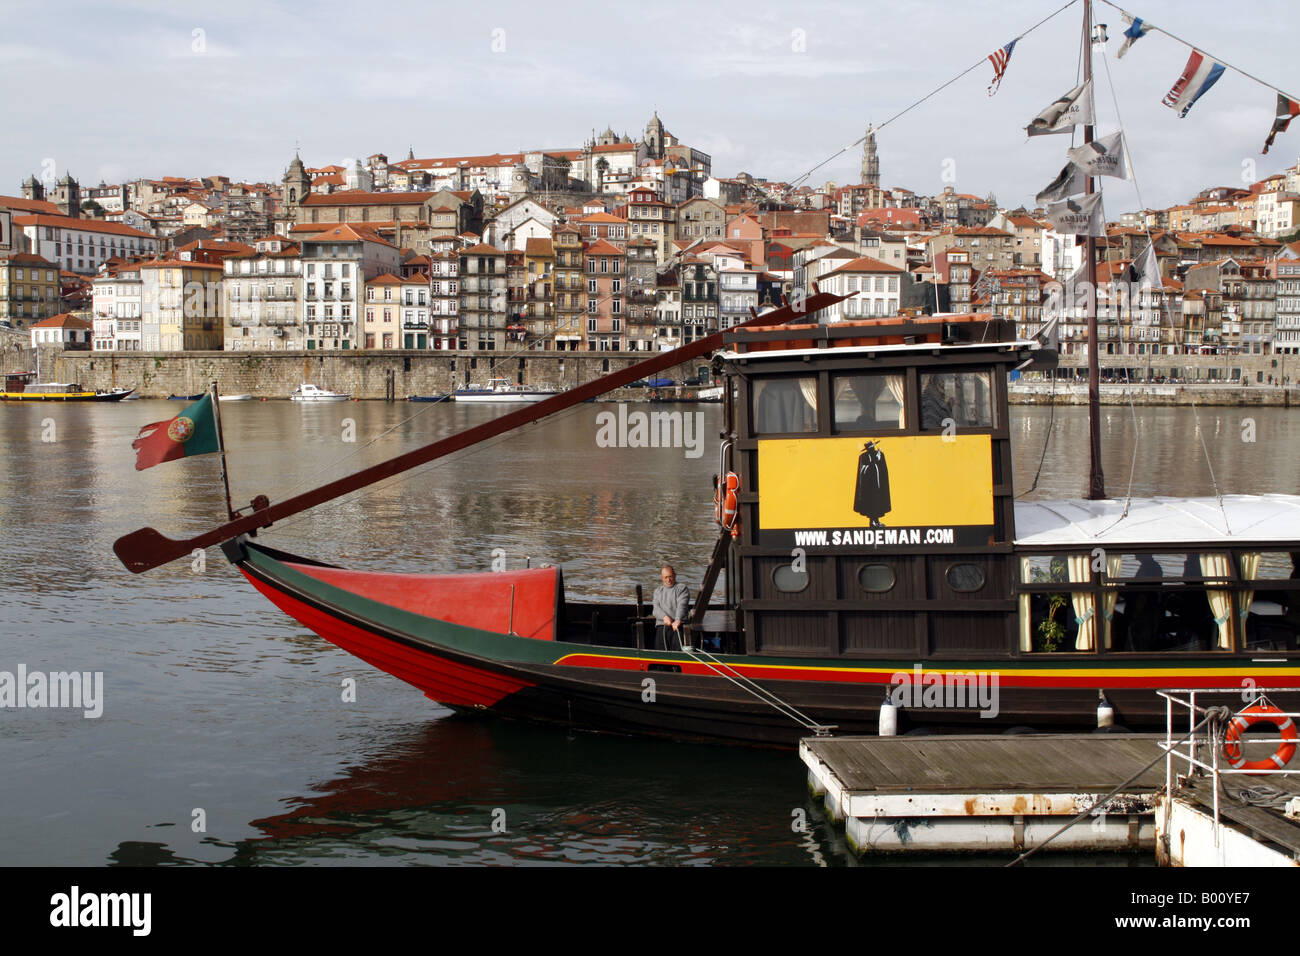 Bateau sur le fleuve Sandeman Douro, Porto, Portugal Banque D'Images